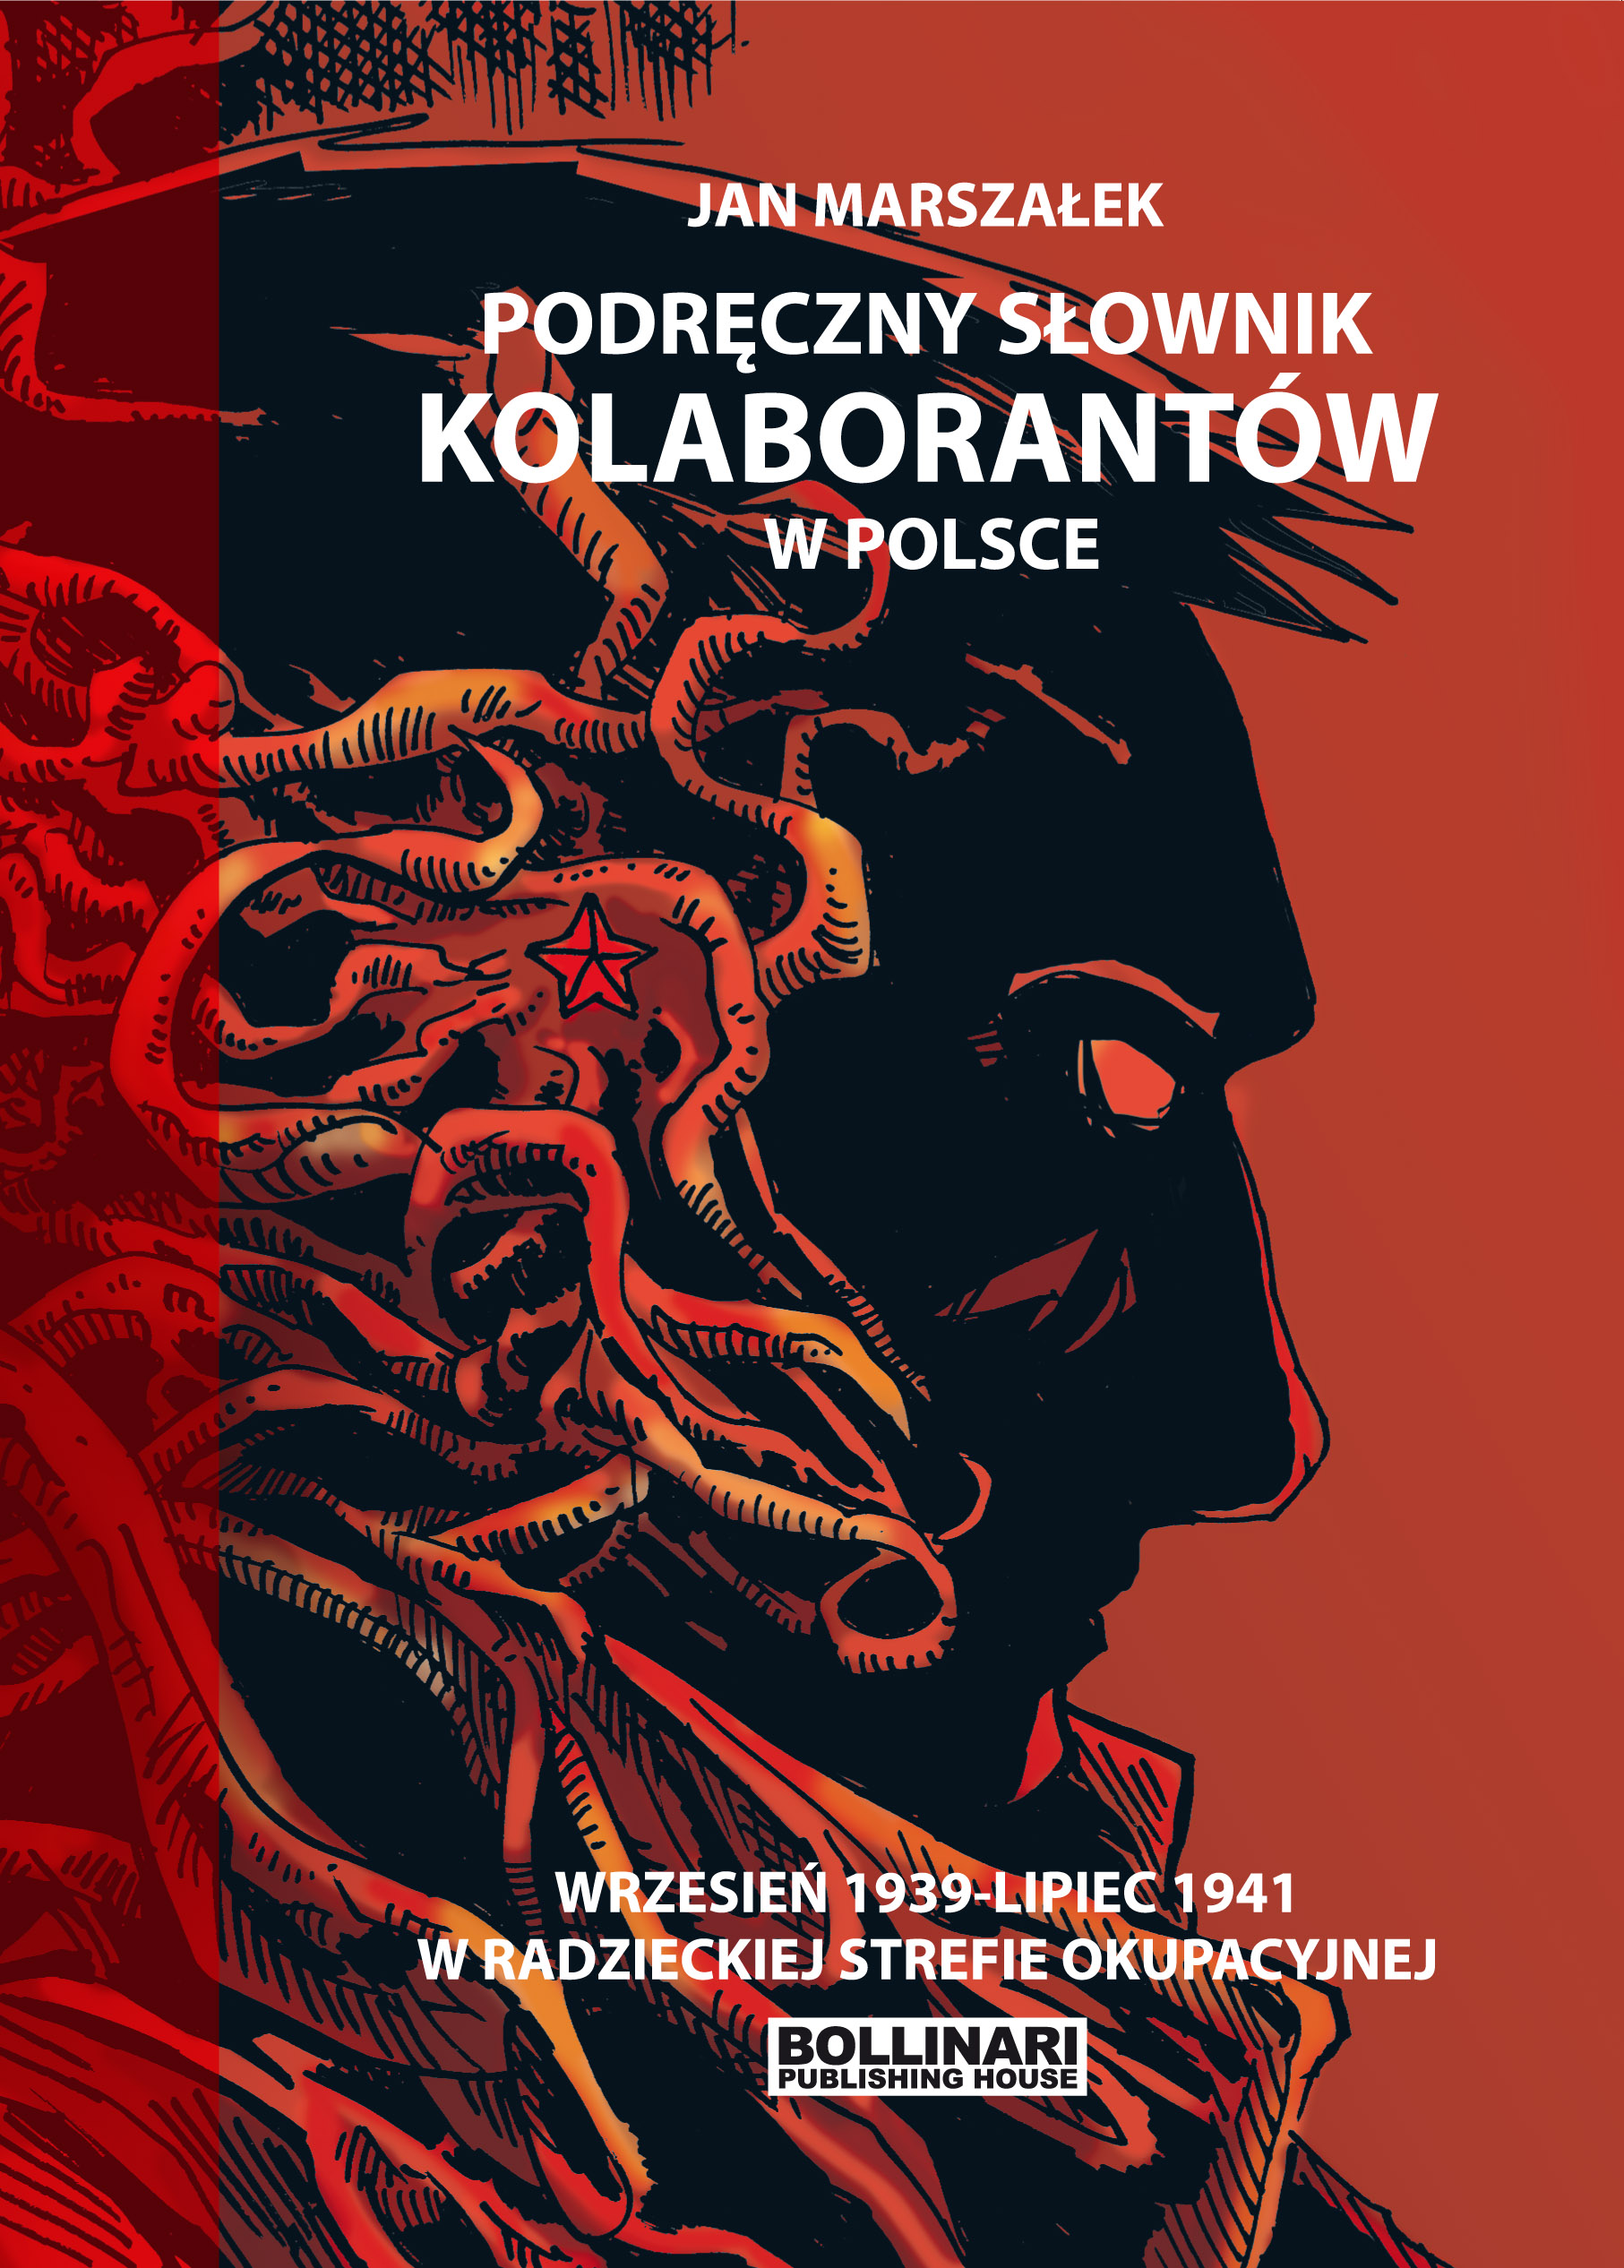 Podręczny słownik kolaborantów w Polsce wrzesień 1939-lipiec 1941 (J.Marszałek)